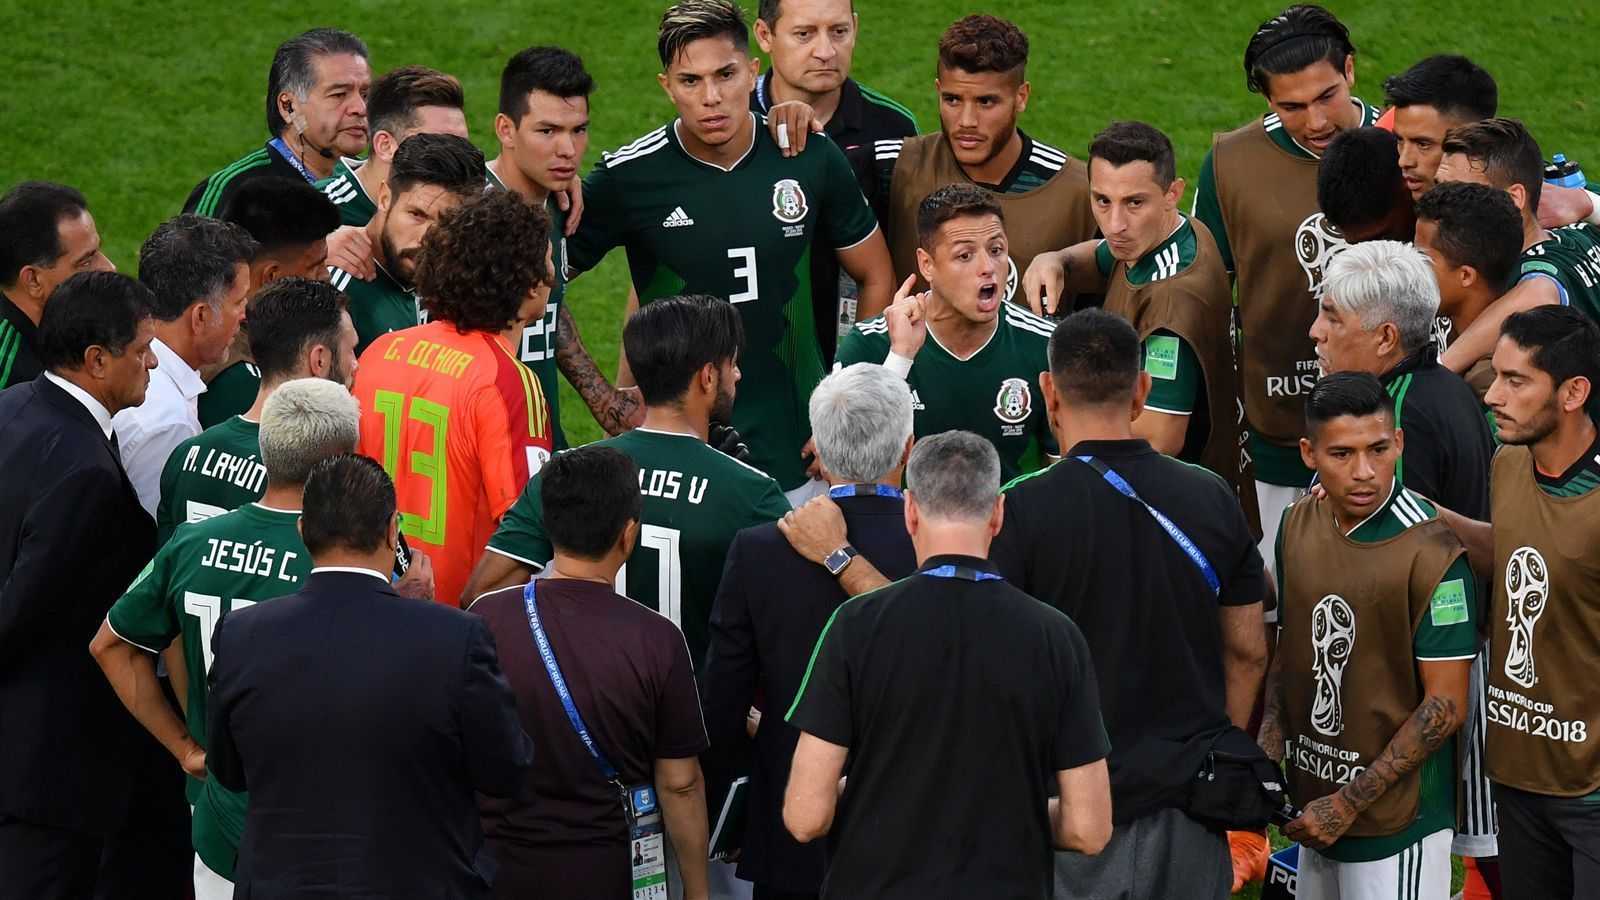 
                <strong>2. Gruppe F: Mexiko</strong><br>
                0:3 verloren - aber trotzdem reicht es für die Qualifikation für die K.o.-Runde. Denn die Niederlage Deutschlands verhilft "El Tri" doch noch zum Einzug inds Achtelfinale. Nun wartet der Sieger aus der Gruppe E.
              